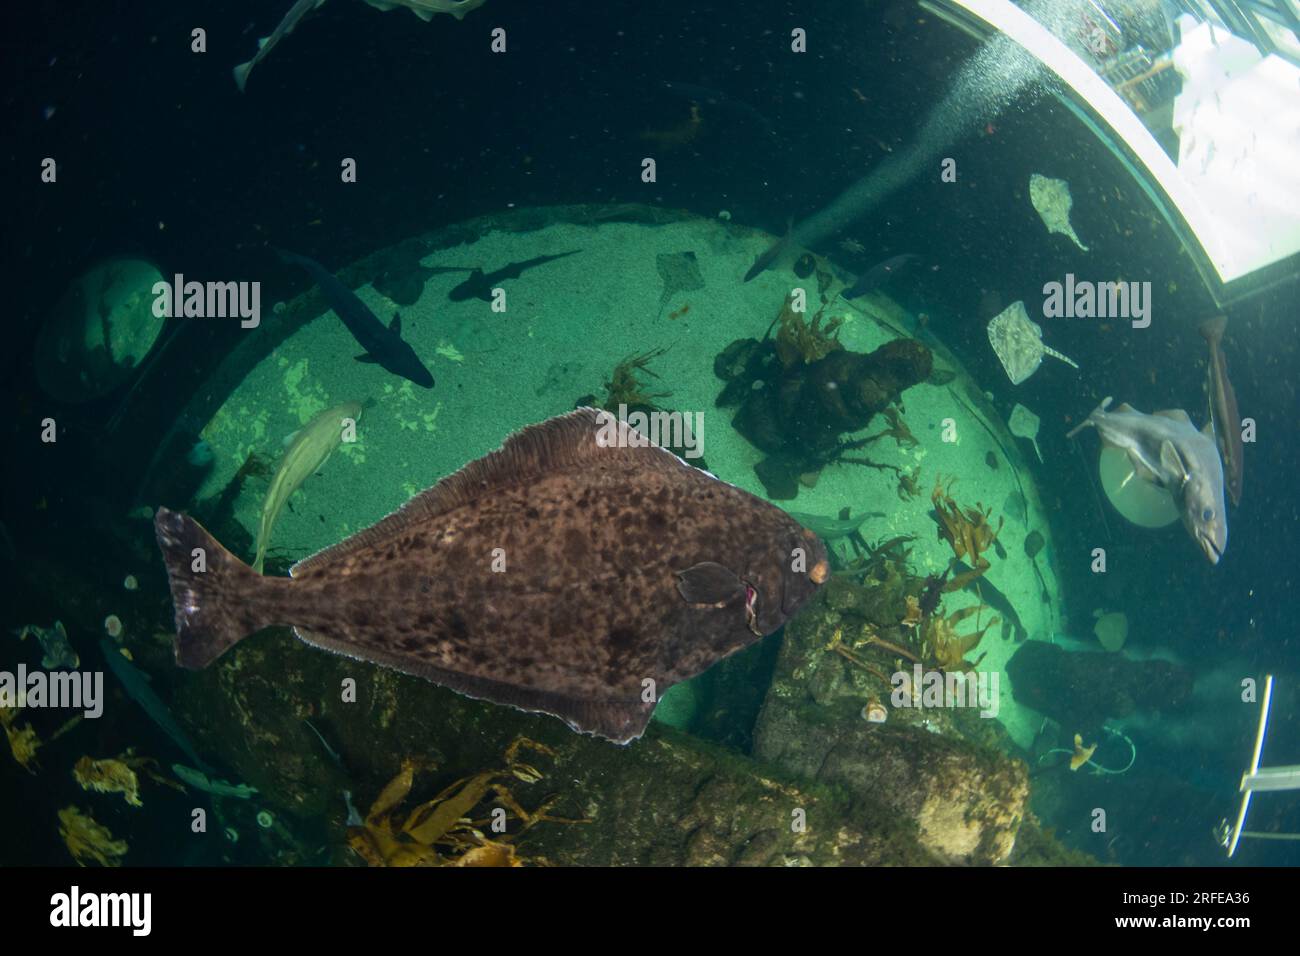 large halibut in a aquarium Stock Photo